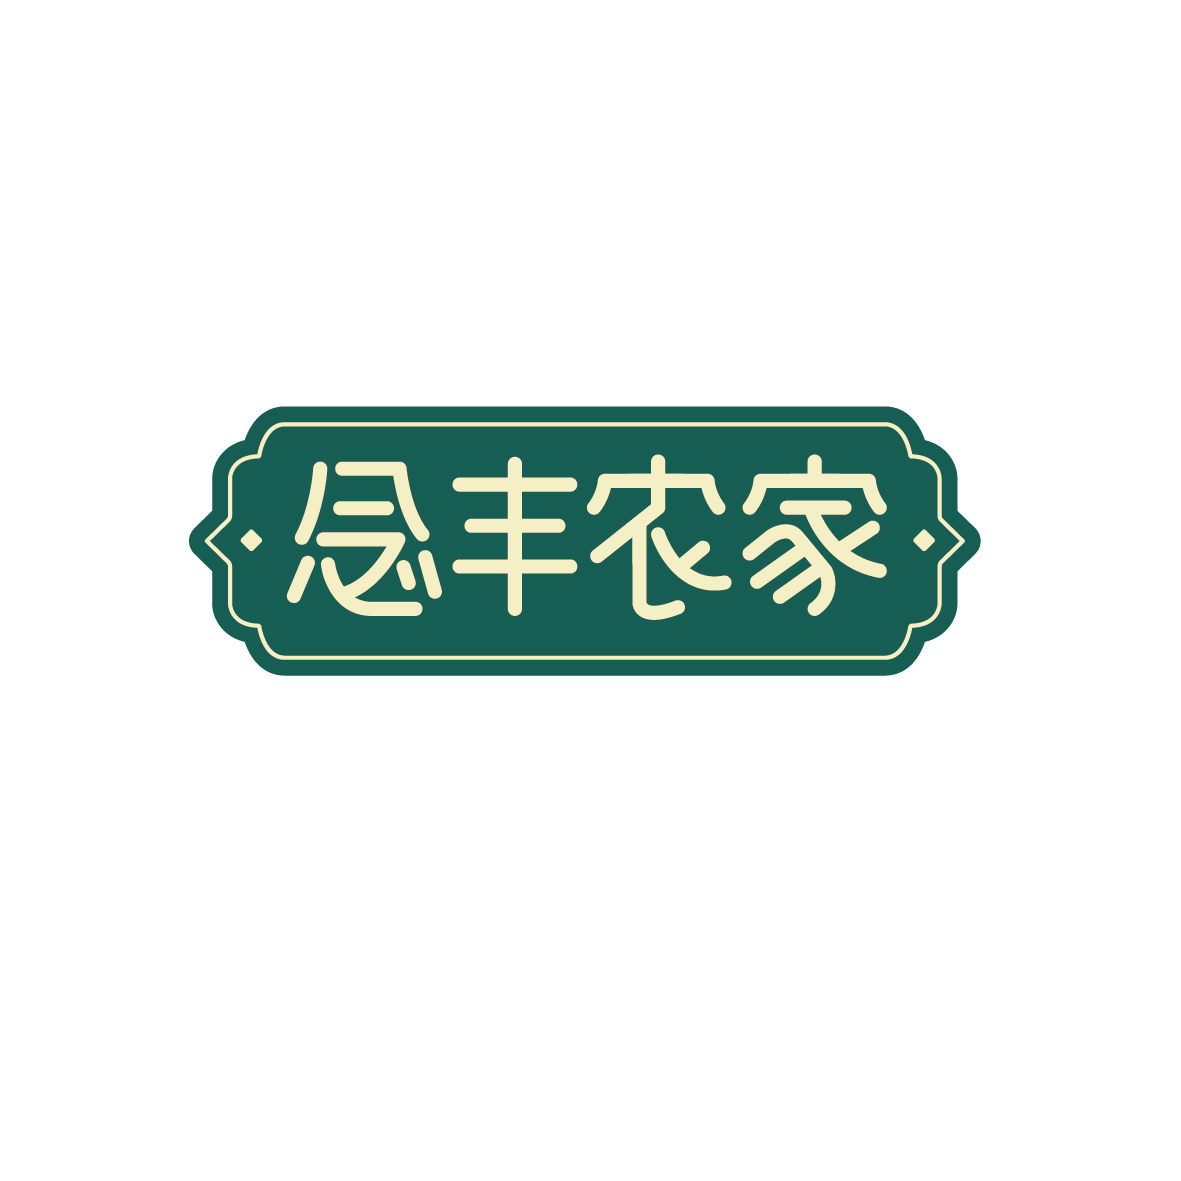 广州市君衍电子商务商行商标念丰农家（43类）多少钱？